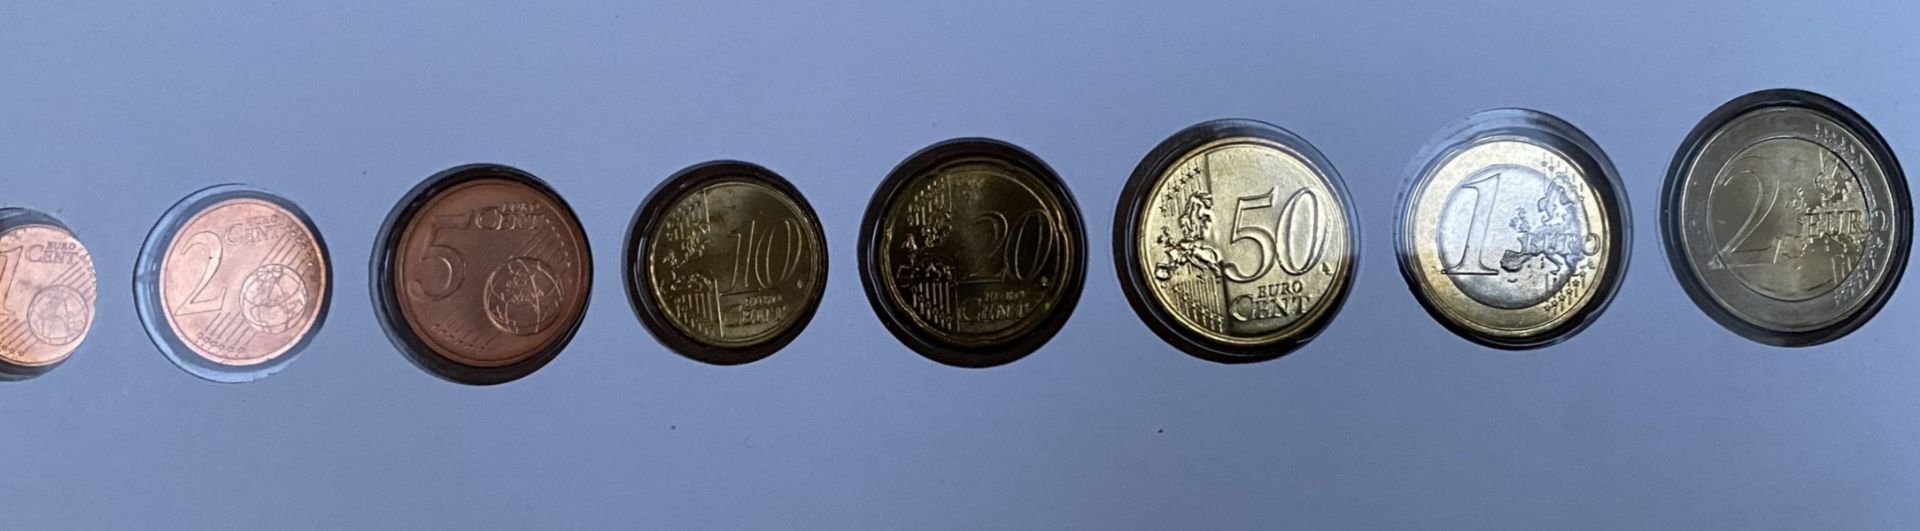 Euro-Numisbrief "Slovenska" mit Beschreibung, 2009, Nennwert 3,88 Euro - Image 2 of 2